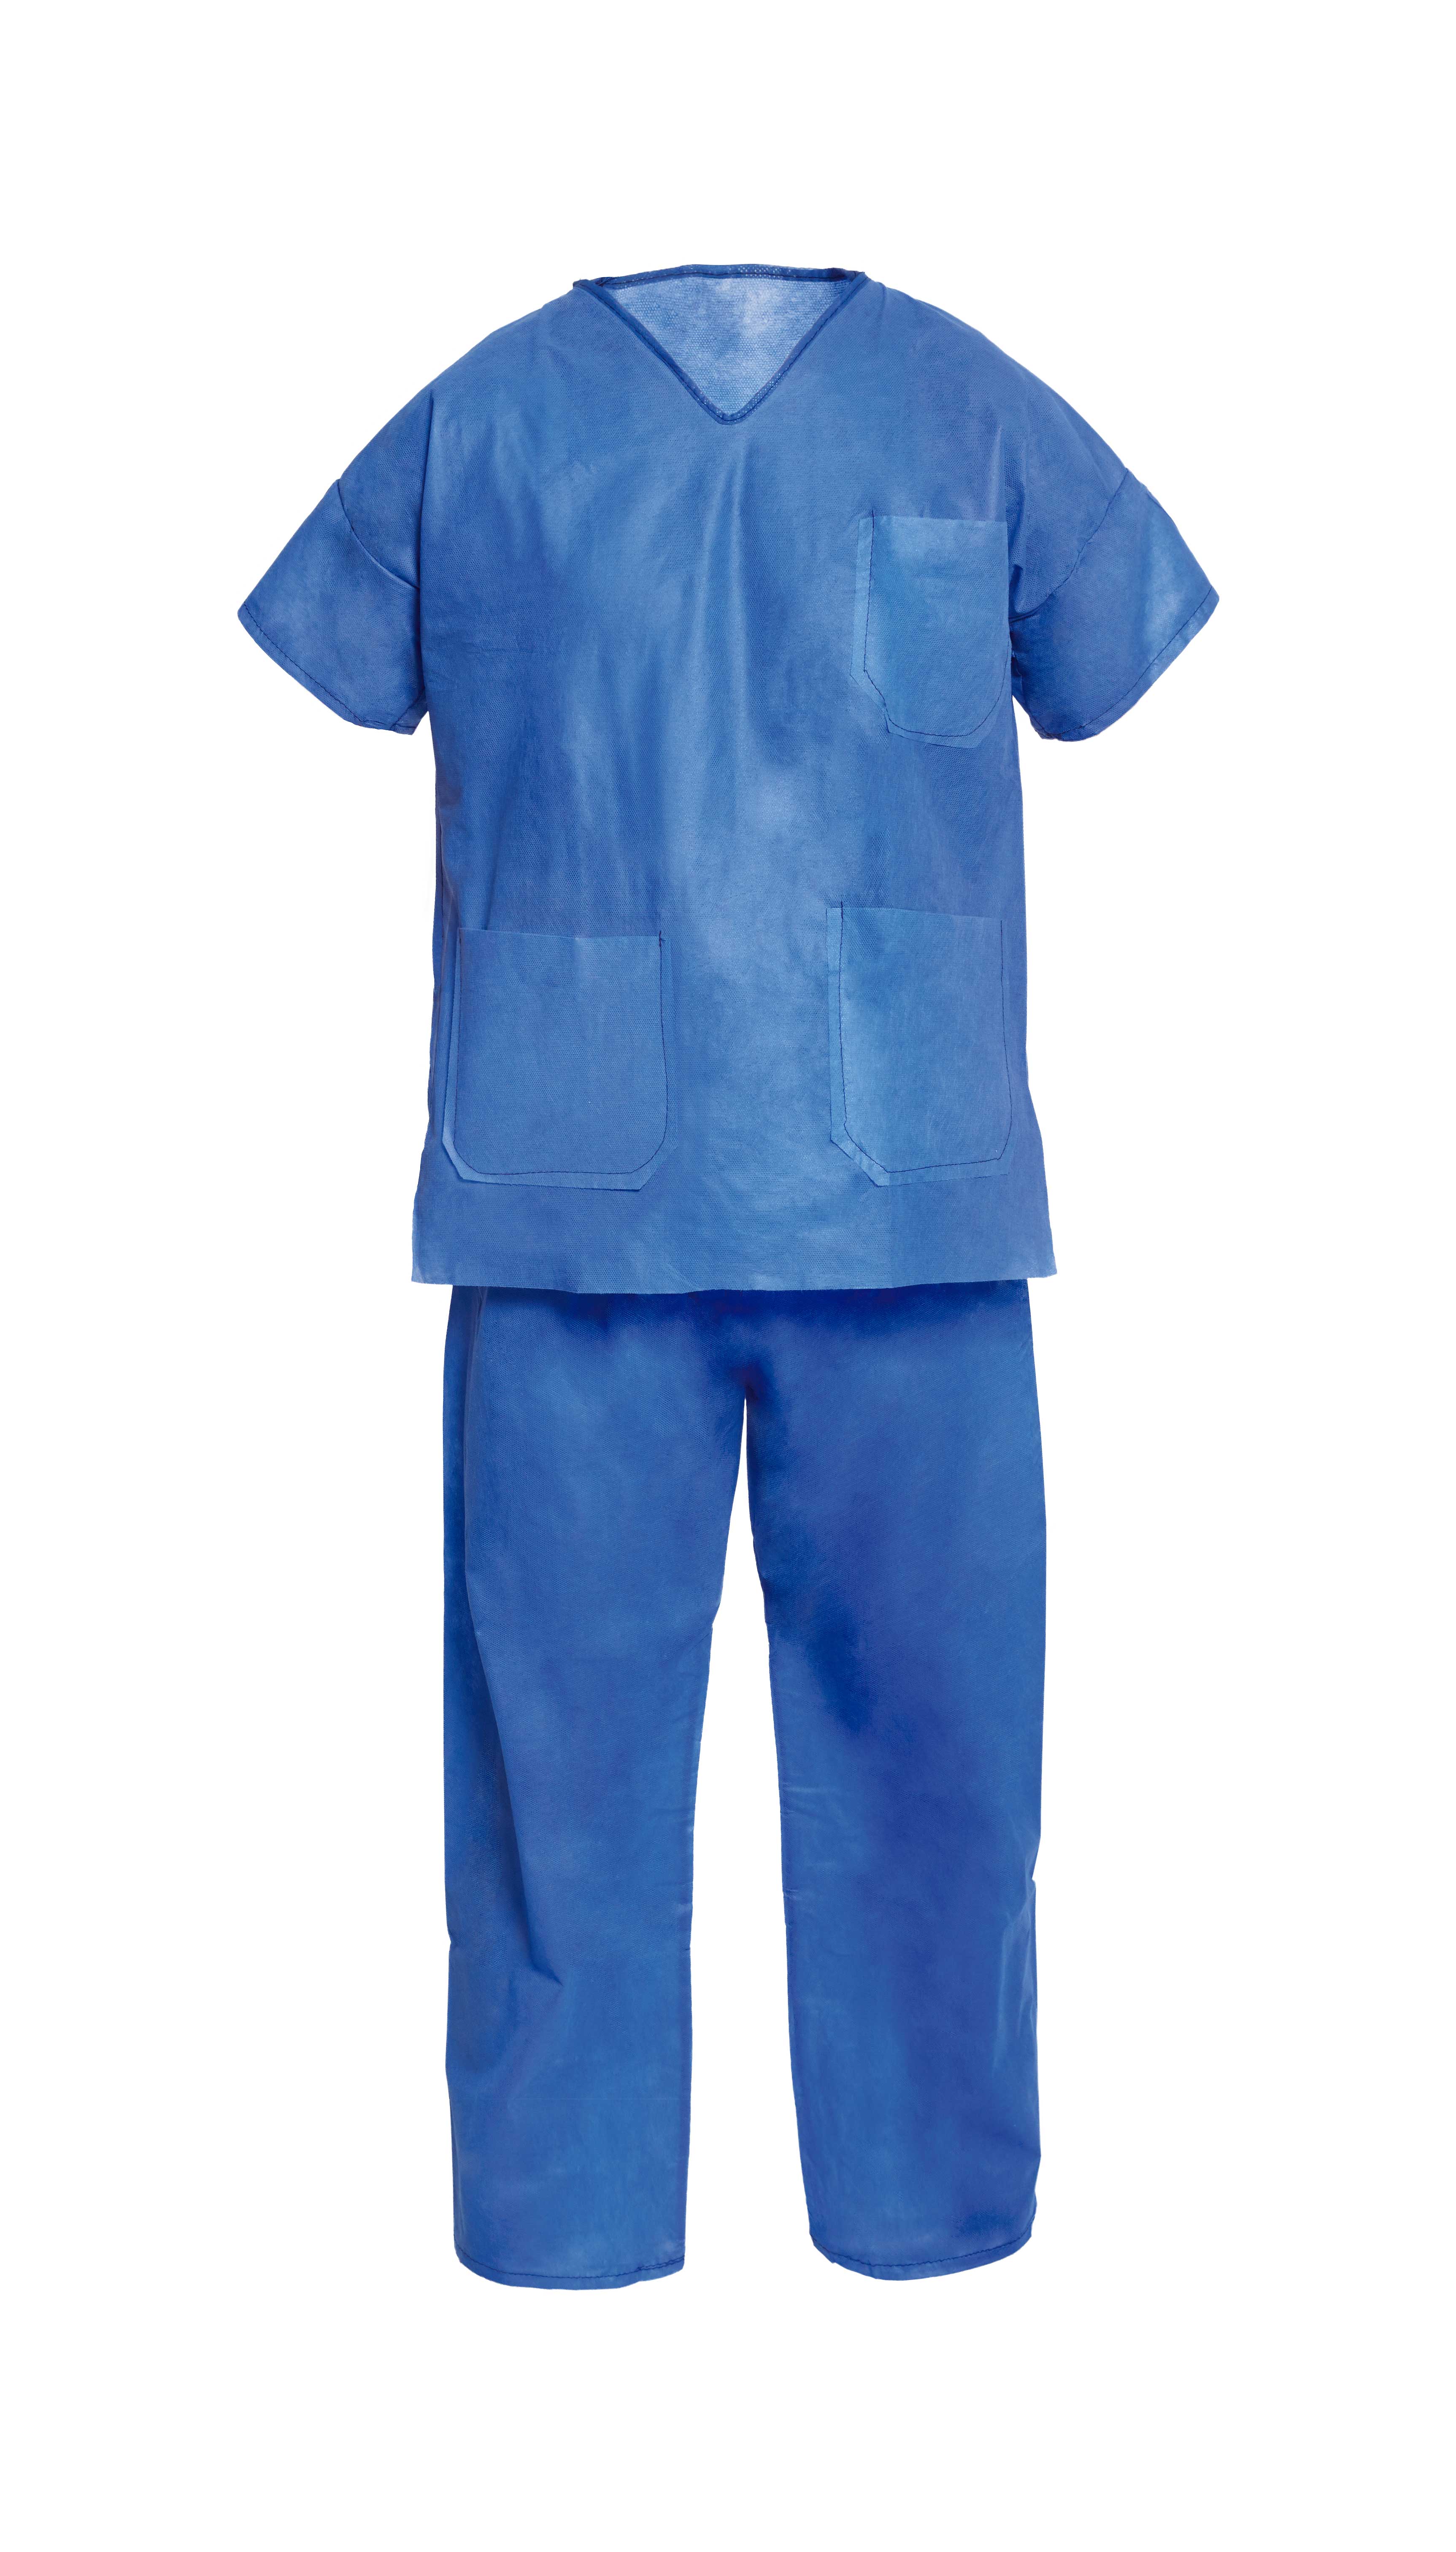 Pijama quirúrgico, NATURCARE®. Material: tejido sin tejer. Bolsillos: 3x parche. Cuello: pico. Cierre pantalón: cintas. Color: azul. Talla: L. Formato: env. individual.